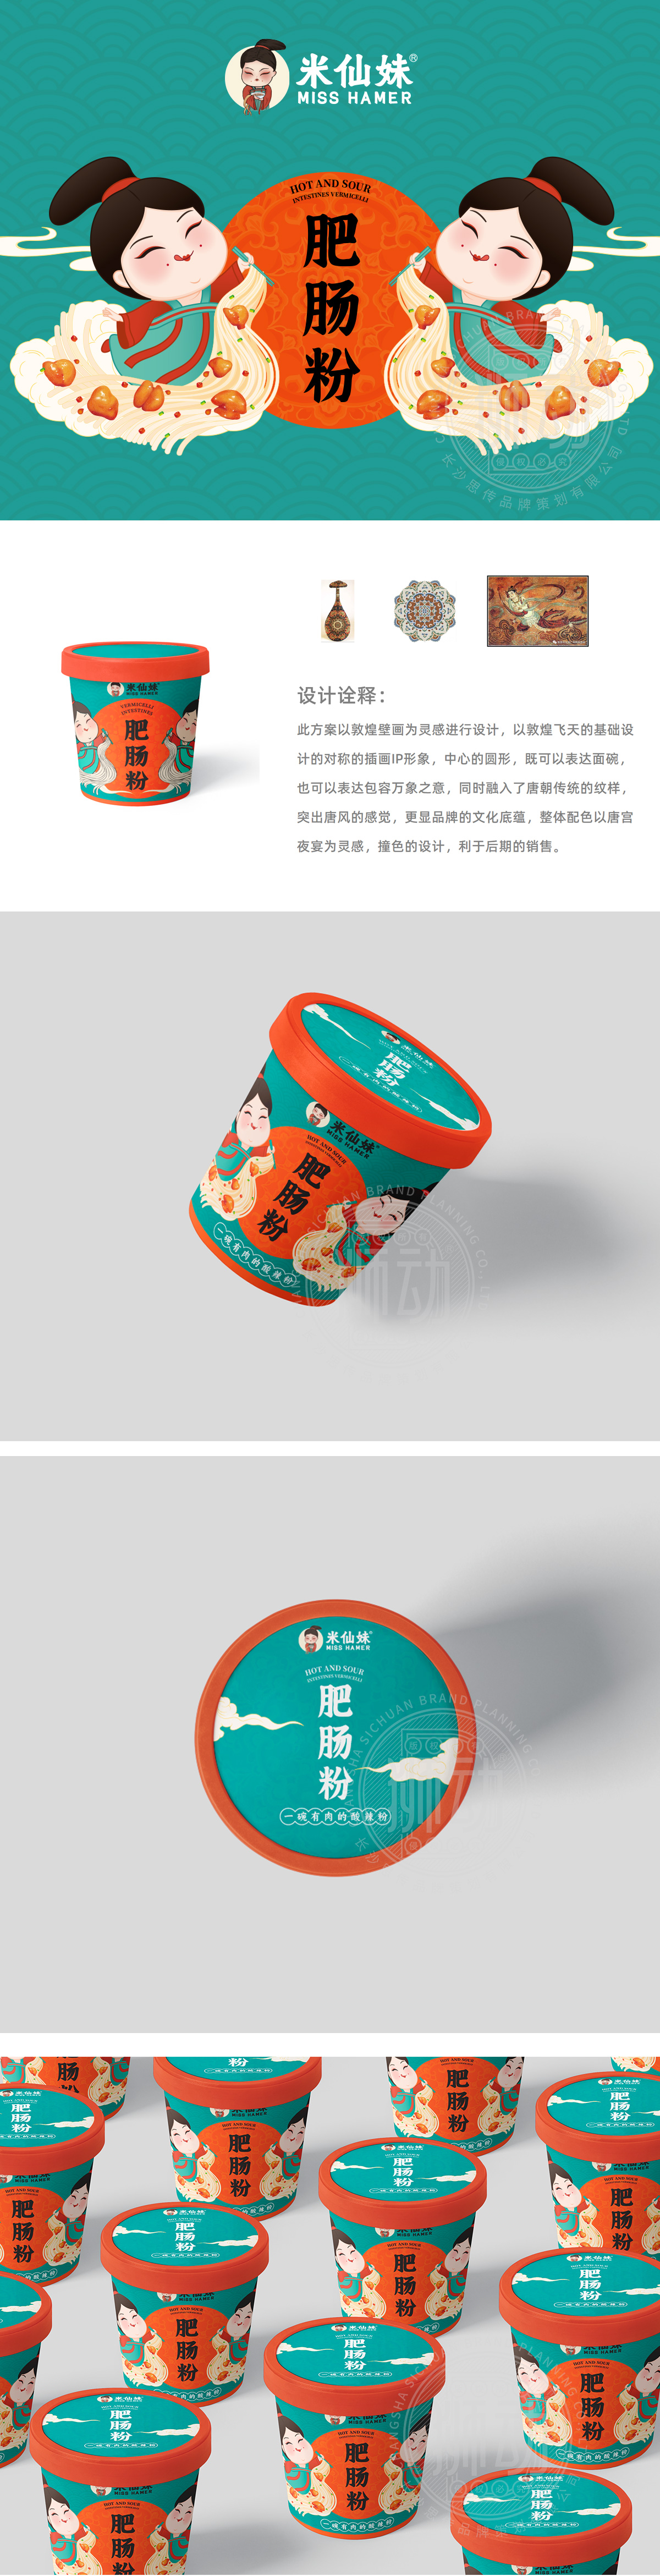 米仙妹肥肠粉 快消食品 包装设计